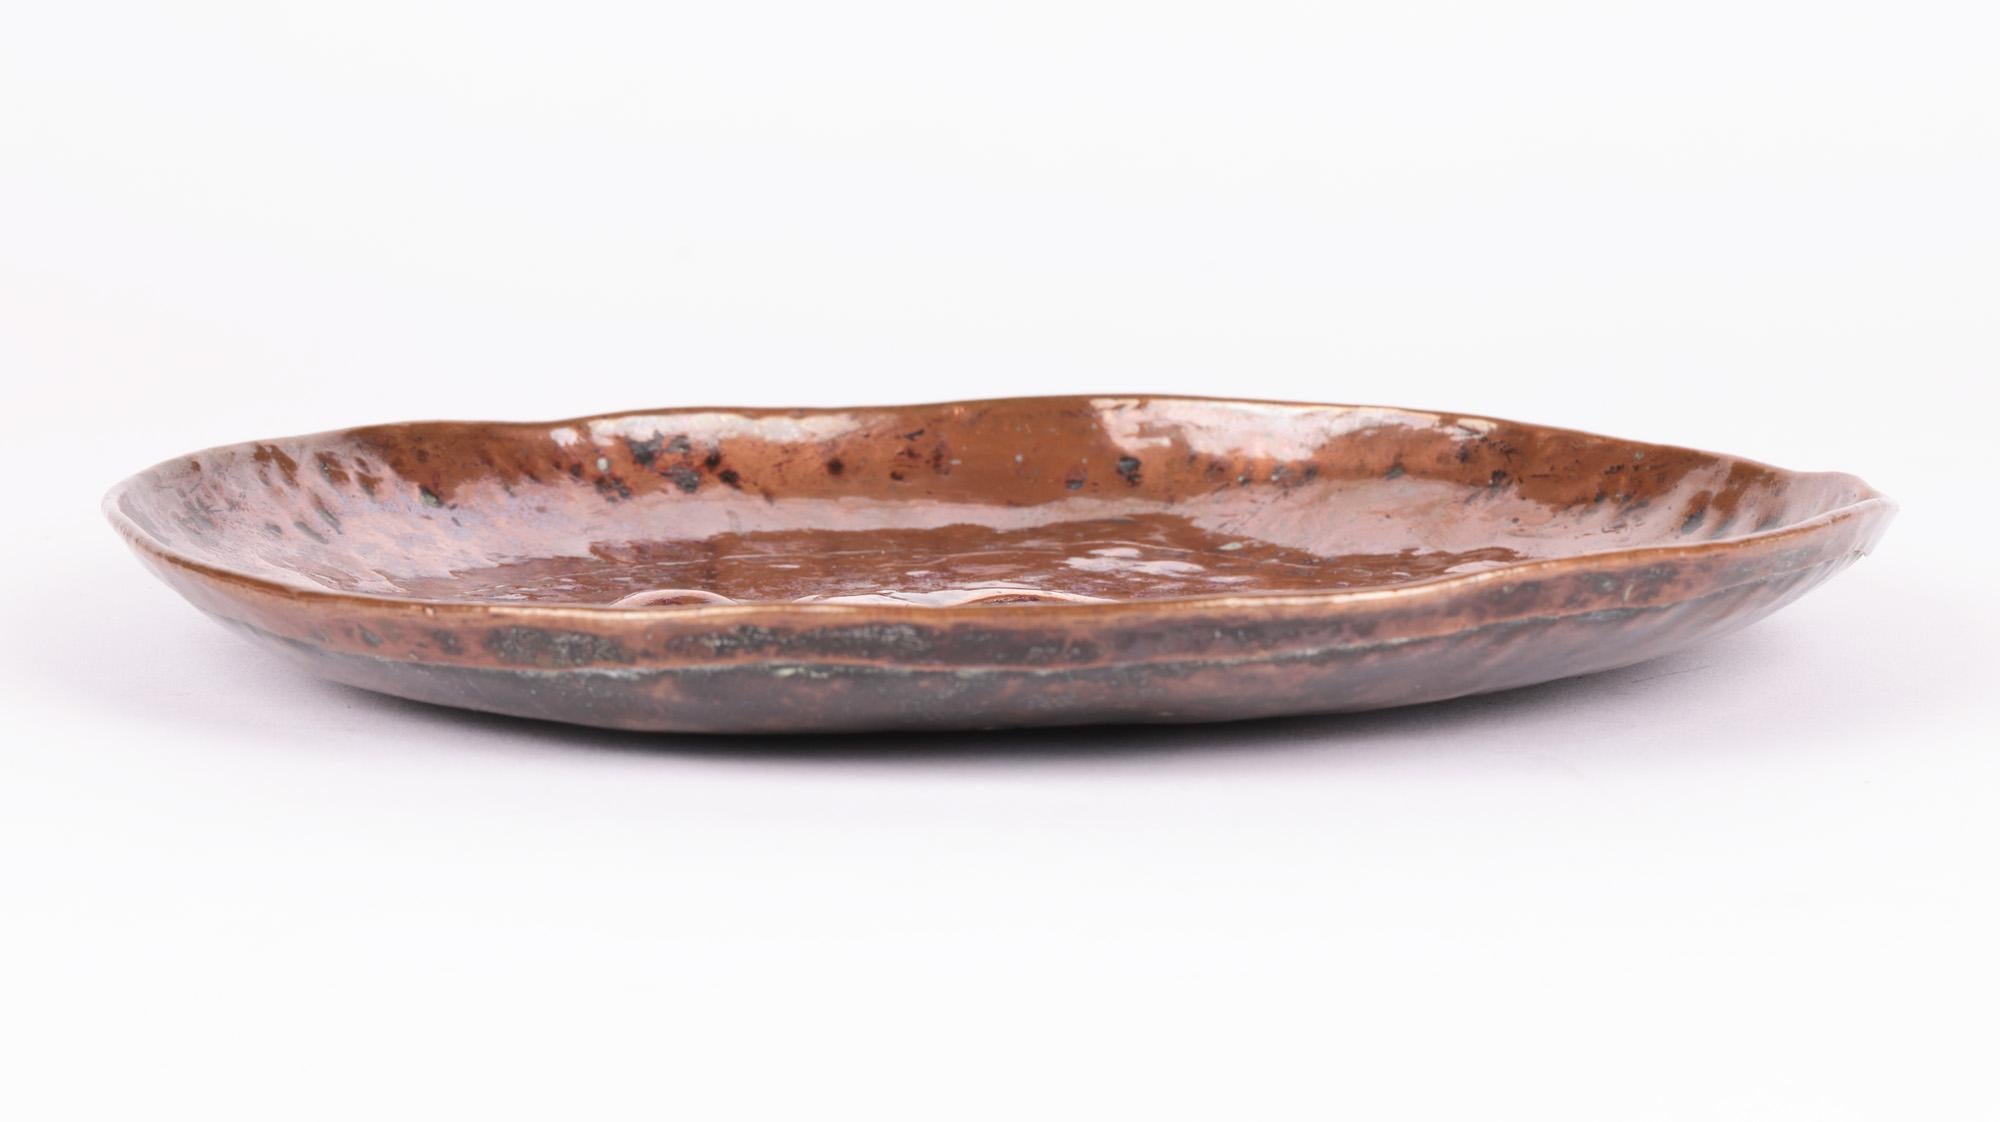 Une plaque ou un plat en cuivre battu très élégant de style Arts & Crafts anglais avec un héron attribué au célèbre atelier de Cornouailles Newlyn et datant d'environ 1900. Le plat est fabriqué à la main dans un cuivre épais. Le héron, unijambiste